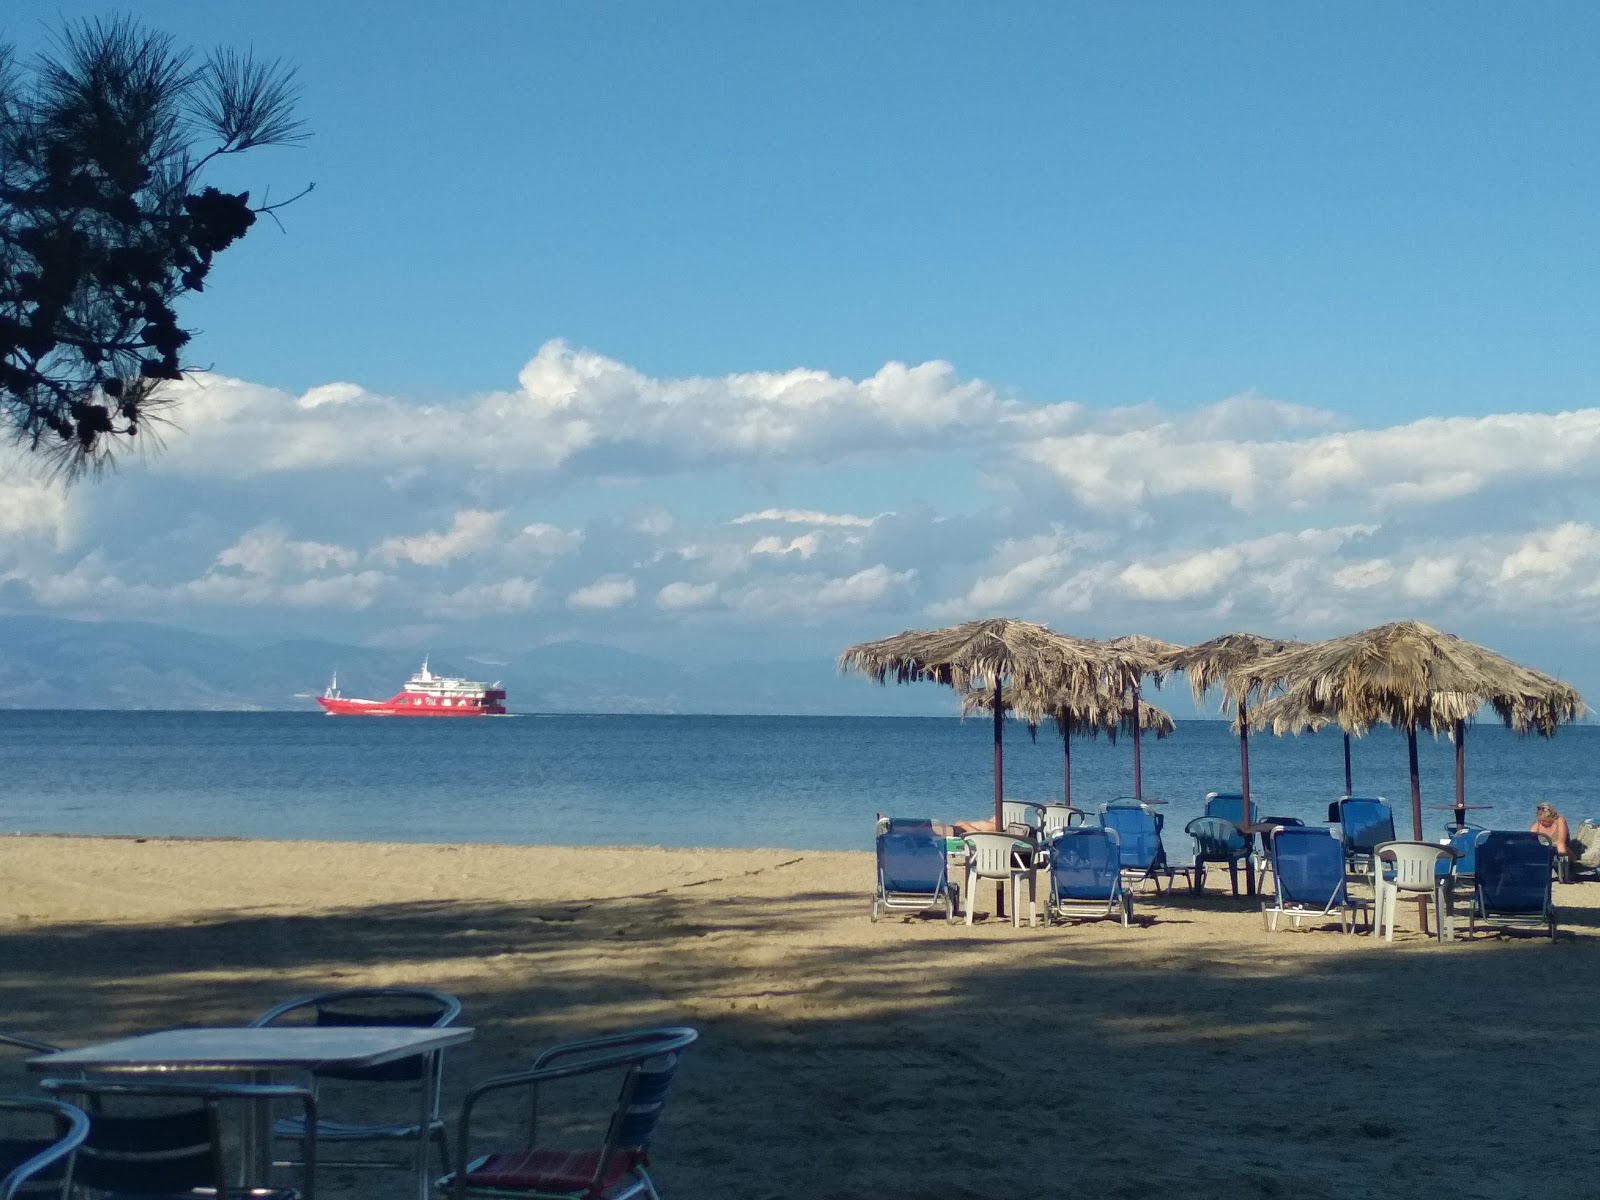 Zdjęcie Aphrodite beach - popularne miejsce wśród znawców relaksu